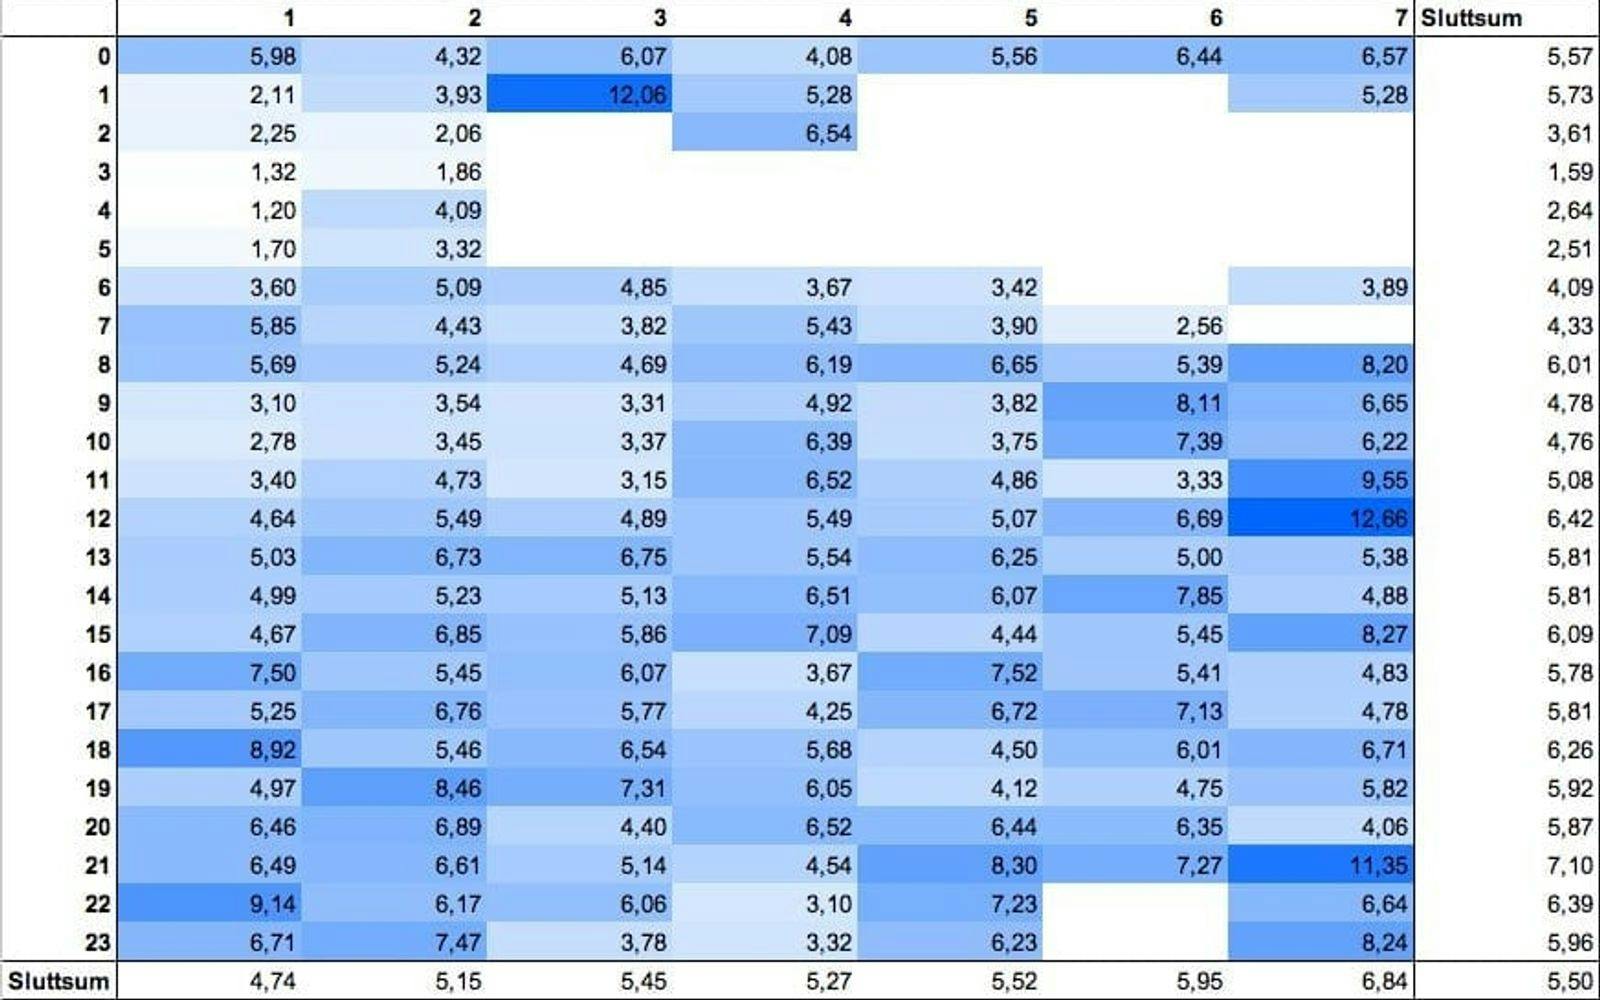 Tabellen viser snittet på klikkrate per time per døgn